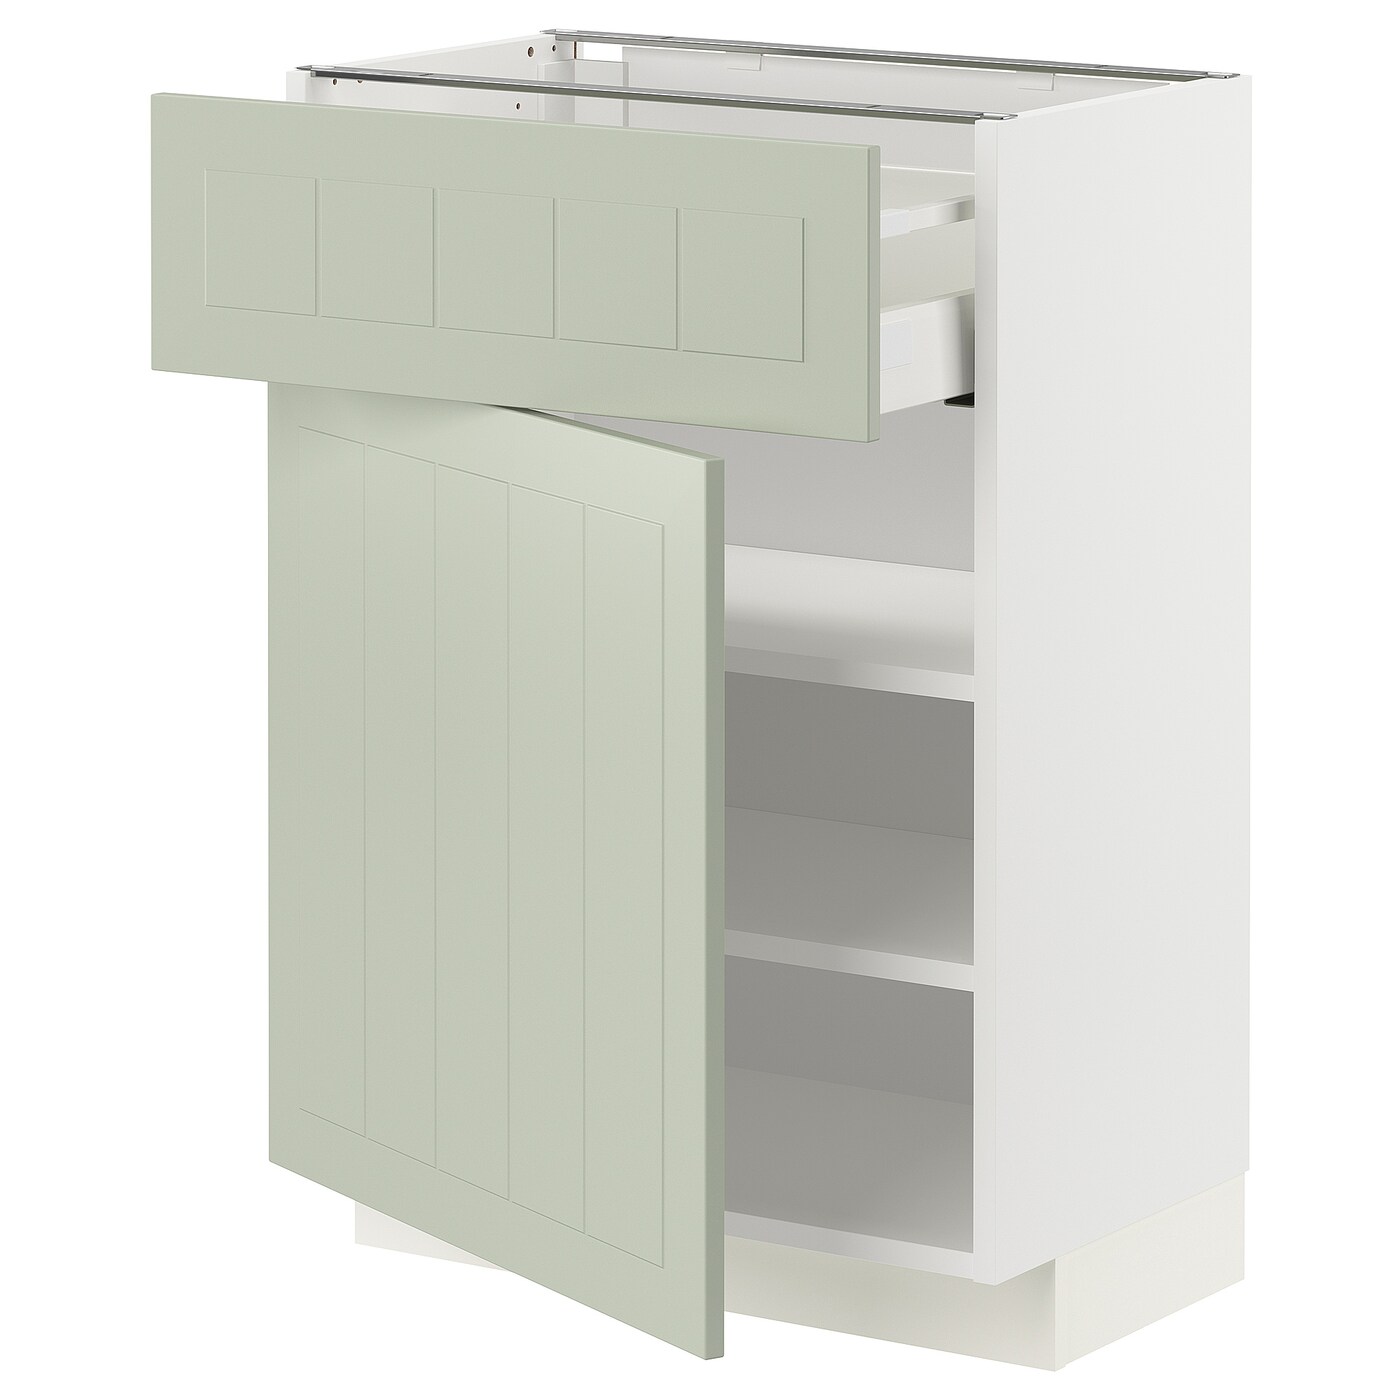 Напольный шкаф - IKEA METOD MAXIMERA, 88x39,5x60см, белый/светло-зеленый, МЕТОД МАКСИМЕРА ИКЕА